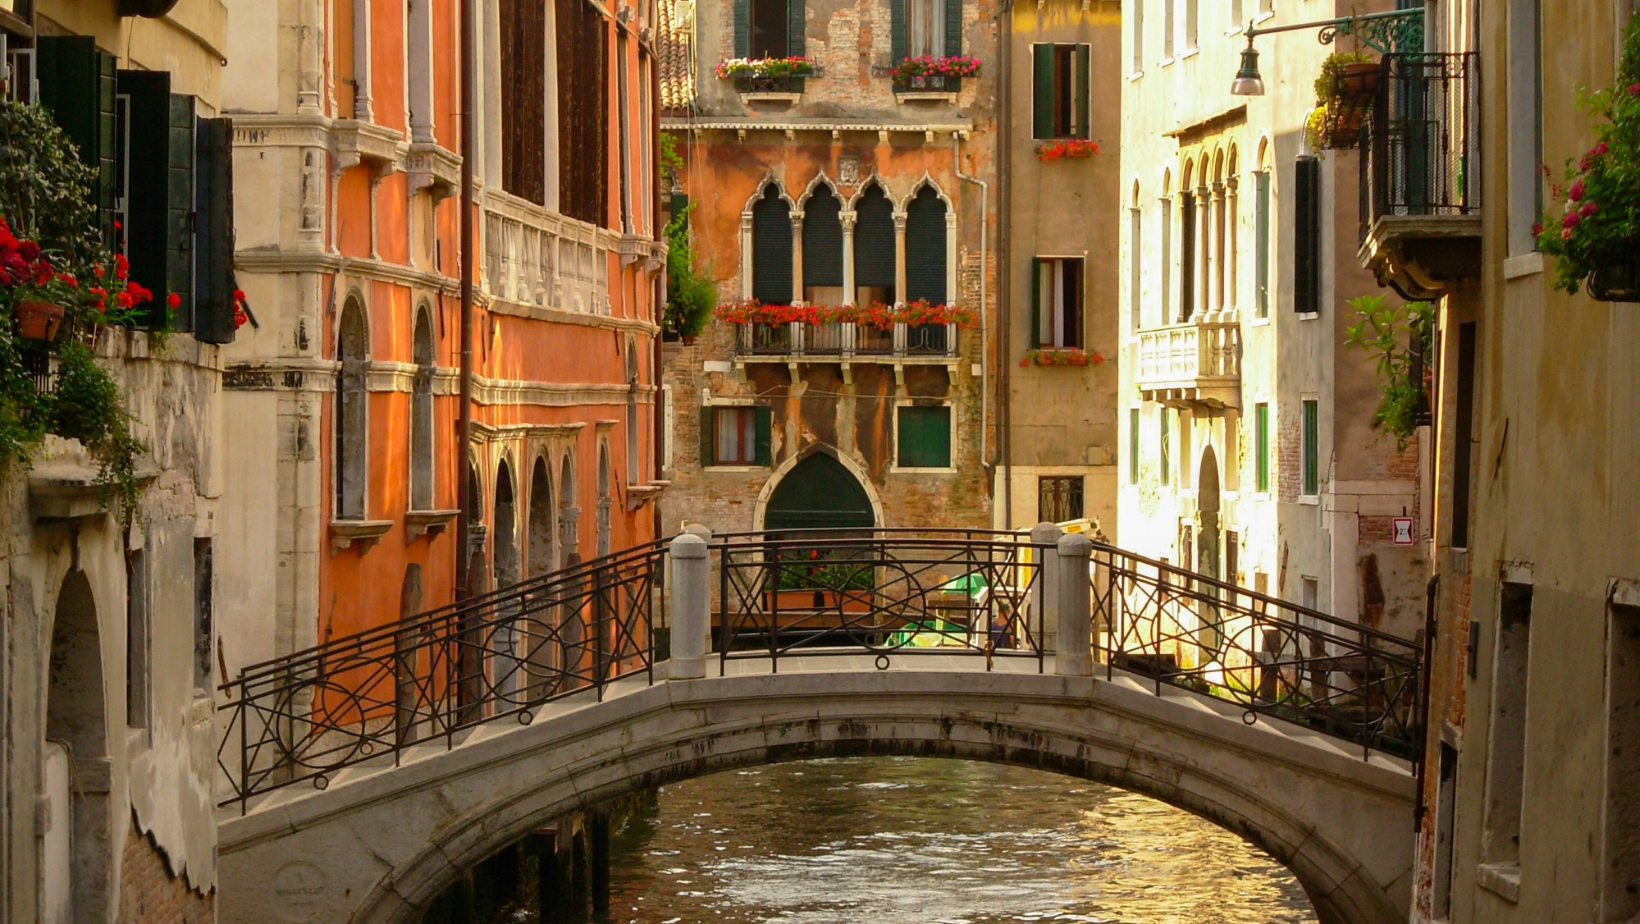 נוף של ונציה עם גשר ובניינים צבעוניים